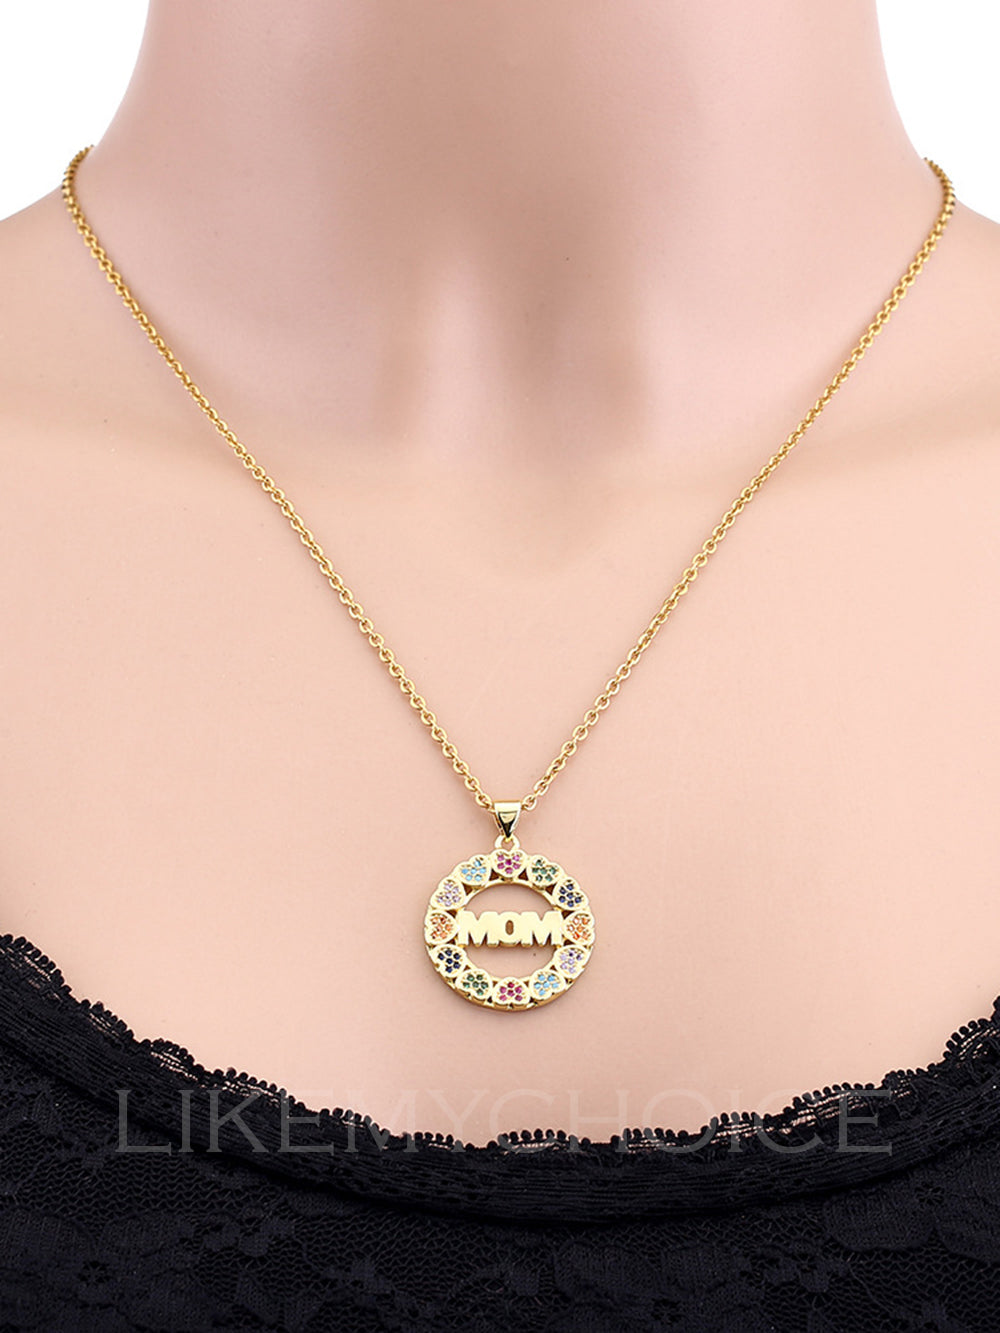 Moda cobre com colar de mãe elegante em formato de coração de zircônia